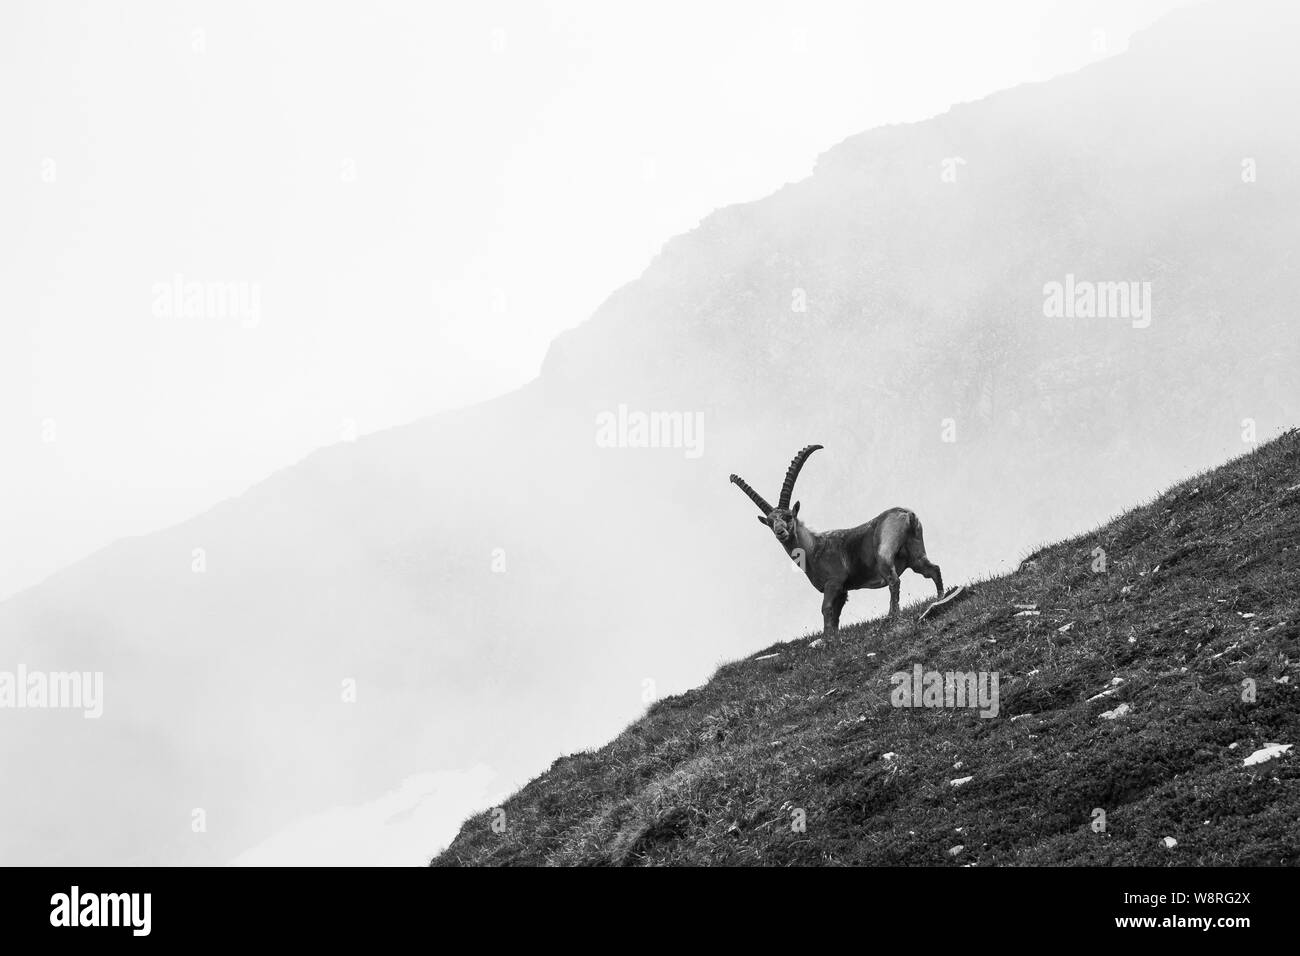 Capra ibex. Steinbock. Fauna alpina, Glocknergruppe en los Alpes austriacos. Fotografía en blanco negro. Foto de stock